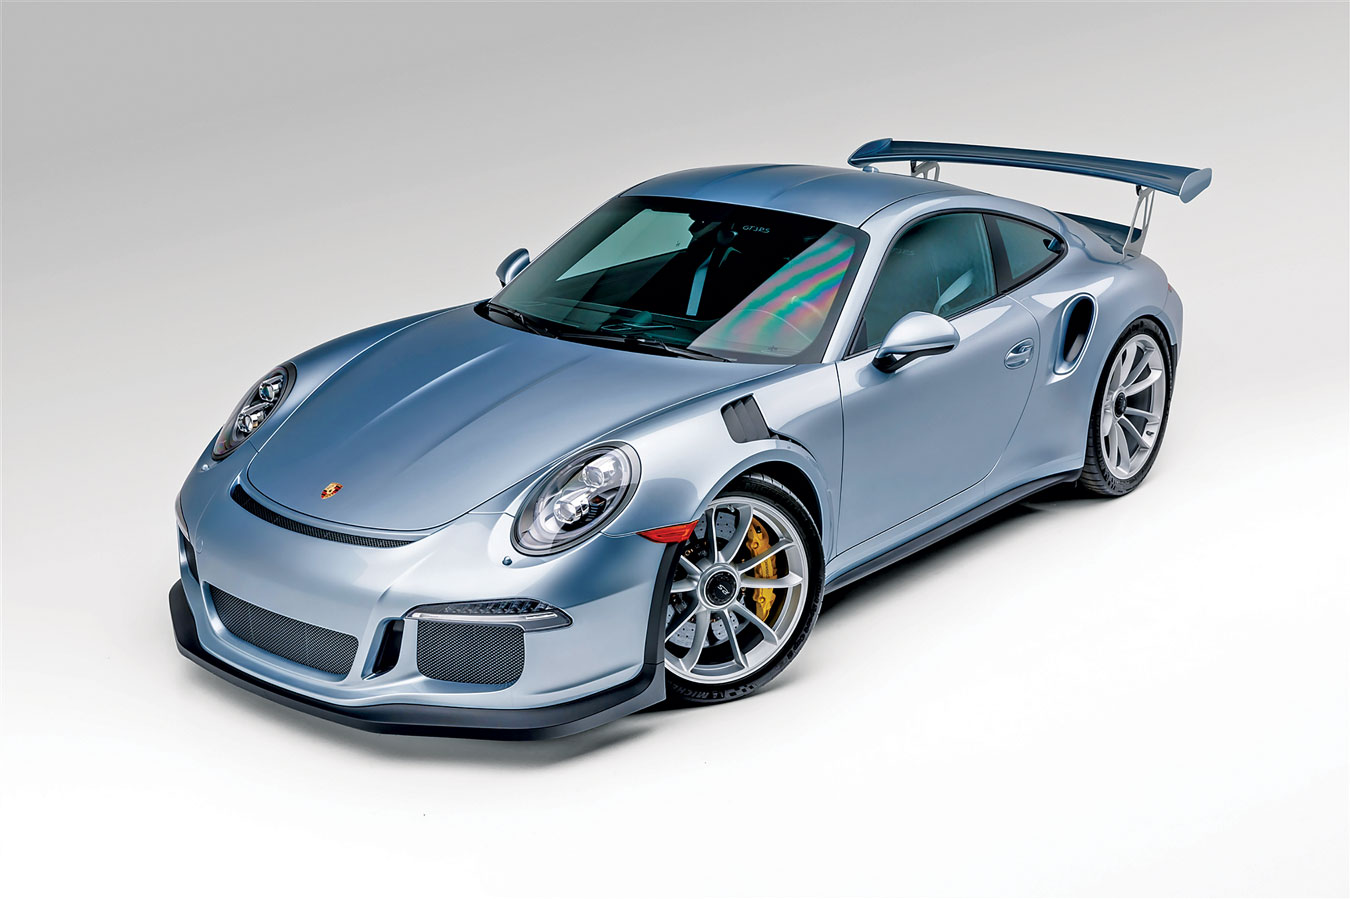 Porsche 911 GT3 RS - Porsche Deutschland